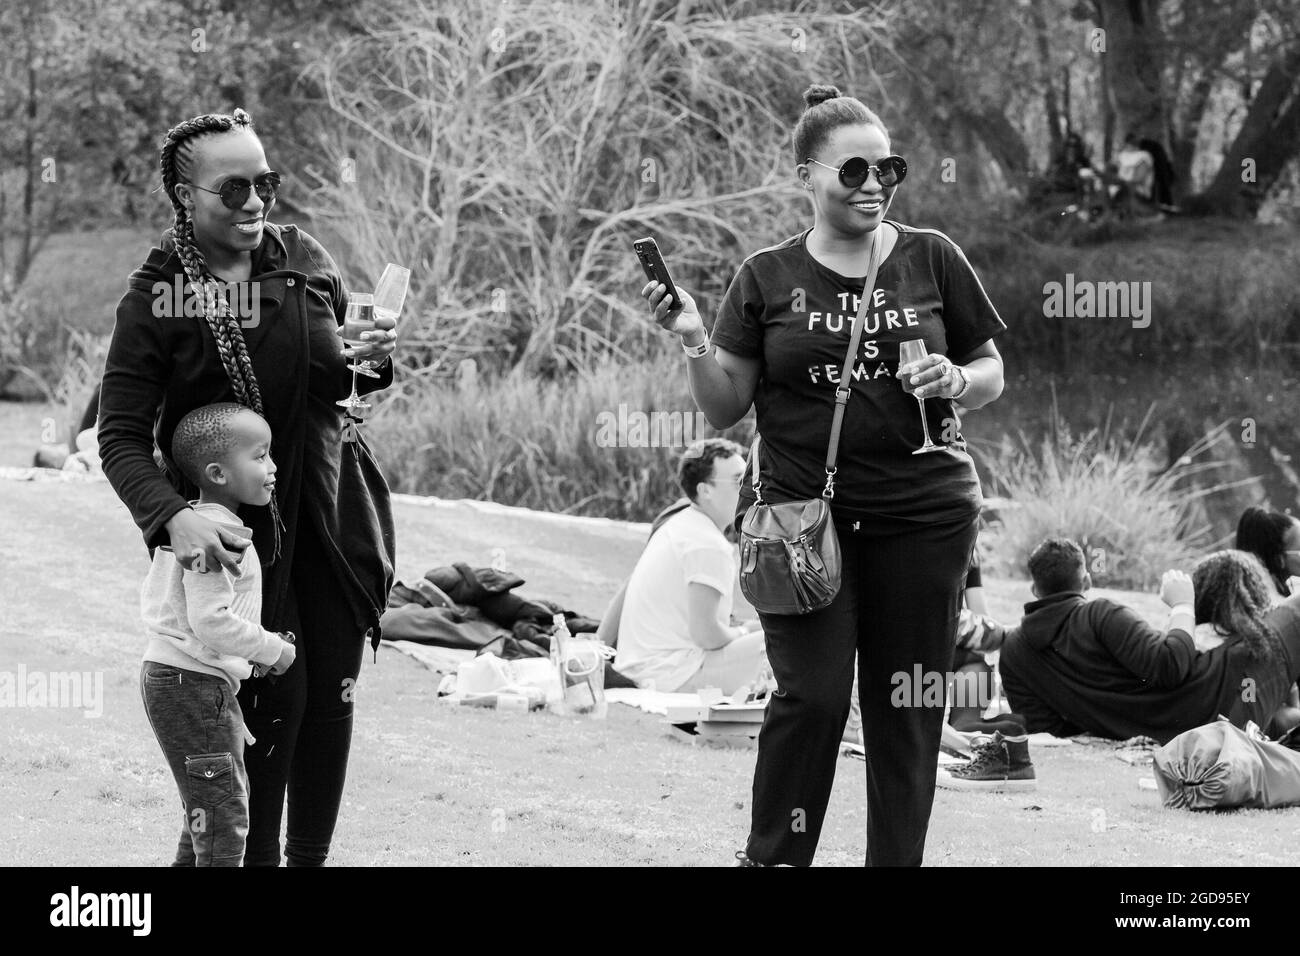 JOHANNESBURG, SÜDAFRIKA - 05. Jan 2021: Eine Graustufe afrikanischer Frauen und eines Jungen auf einem Essen- und Weinfestival im Freien in Johannesburg, Südafrika Stockfoto